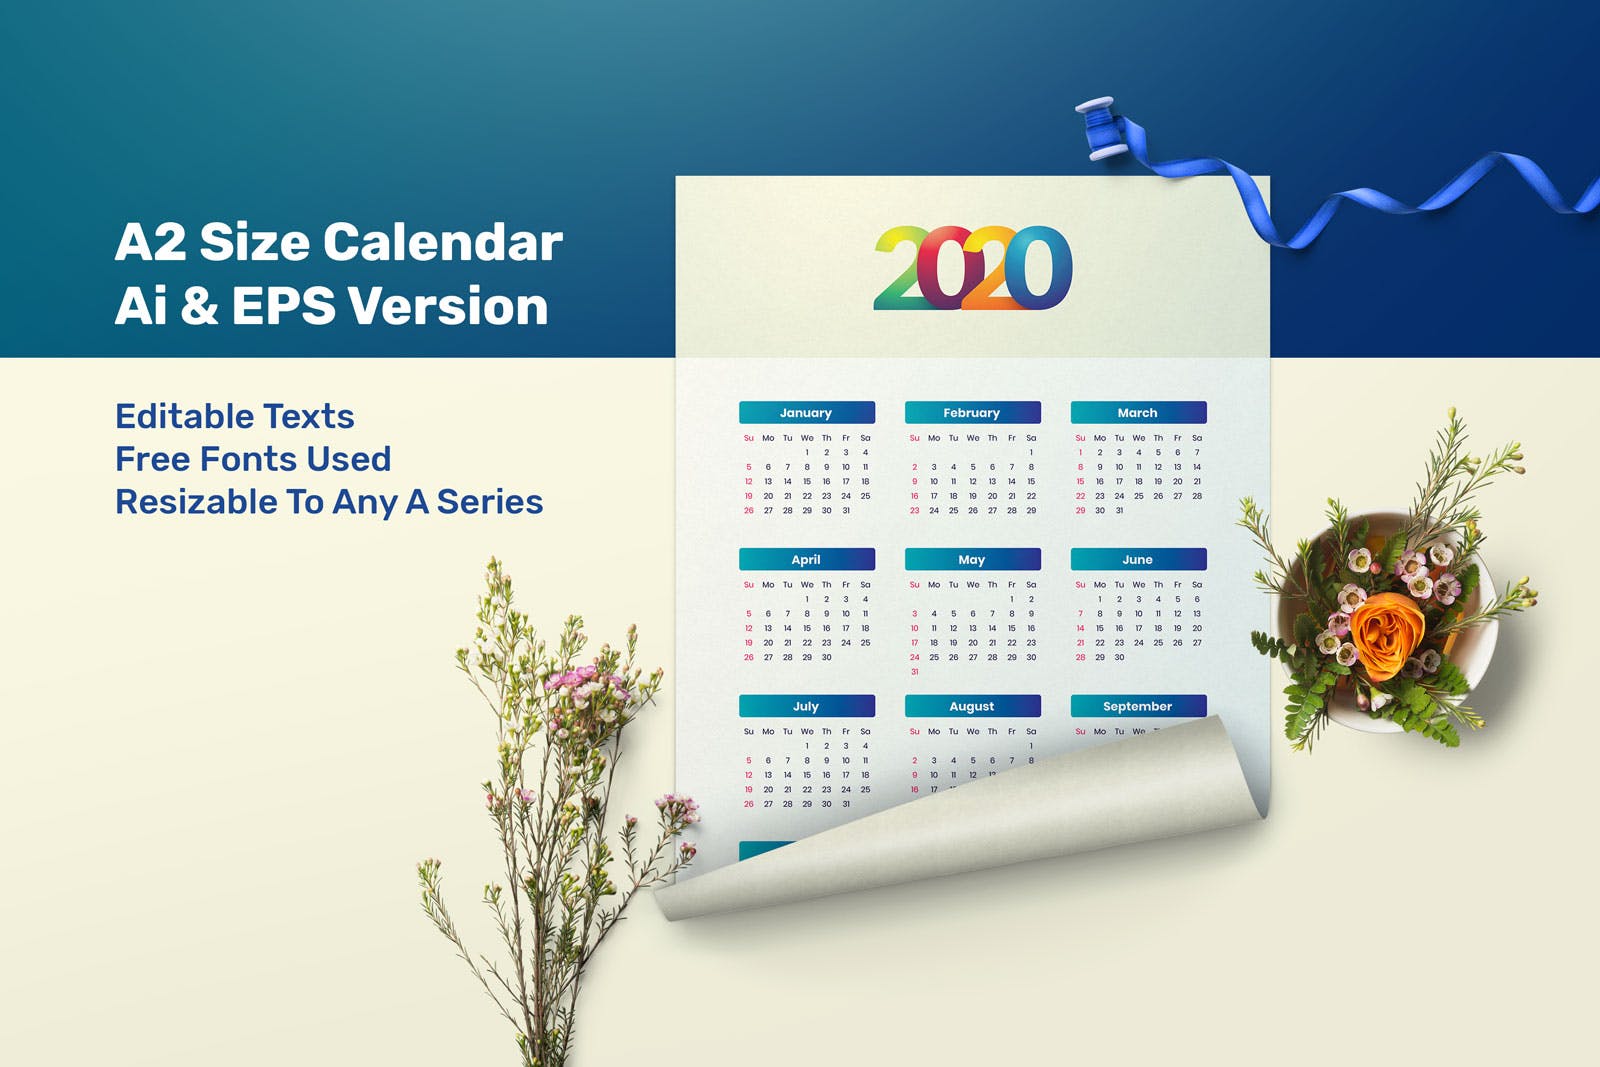 极简风格2020年单页日历表设计模板 Simple Calendar 2020插图(2)